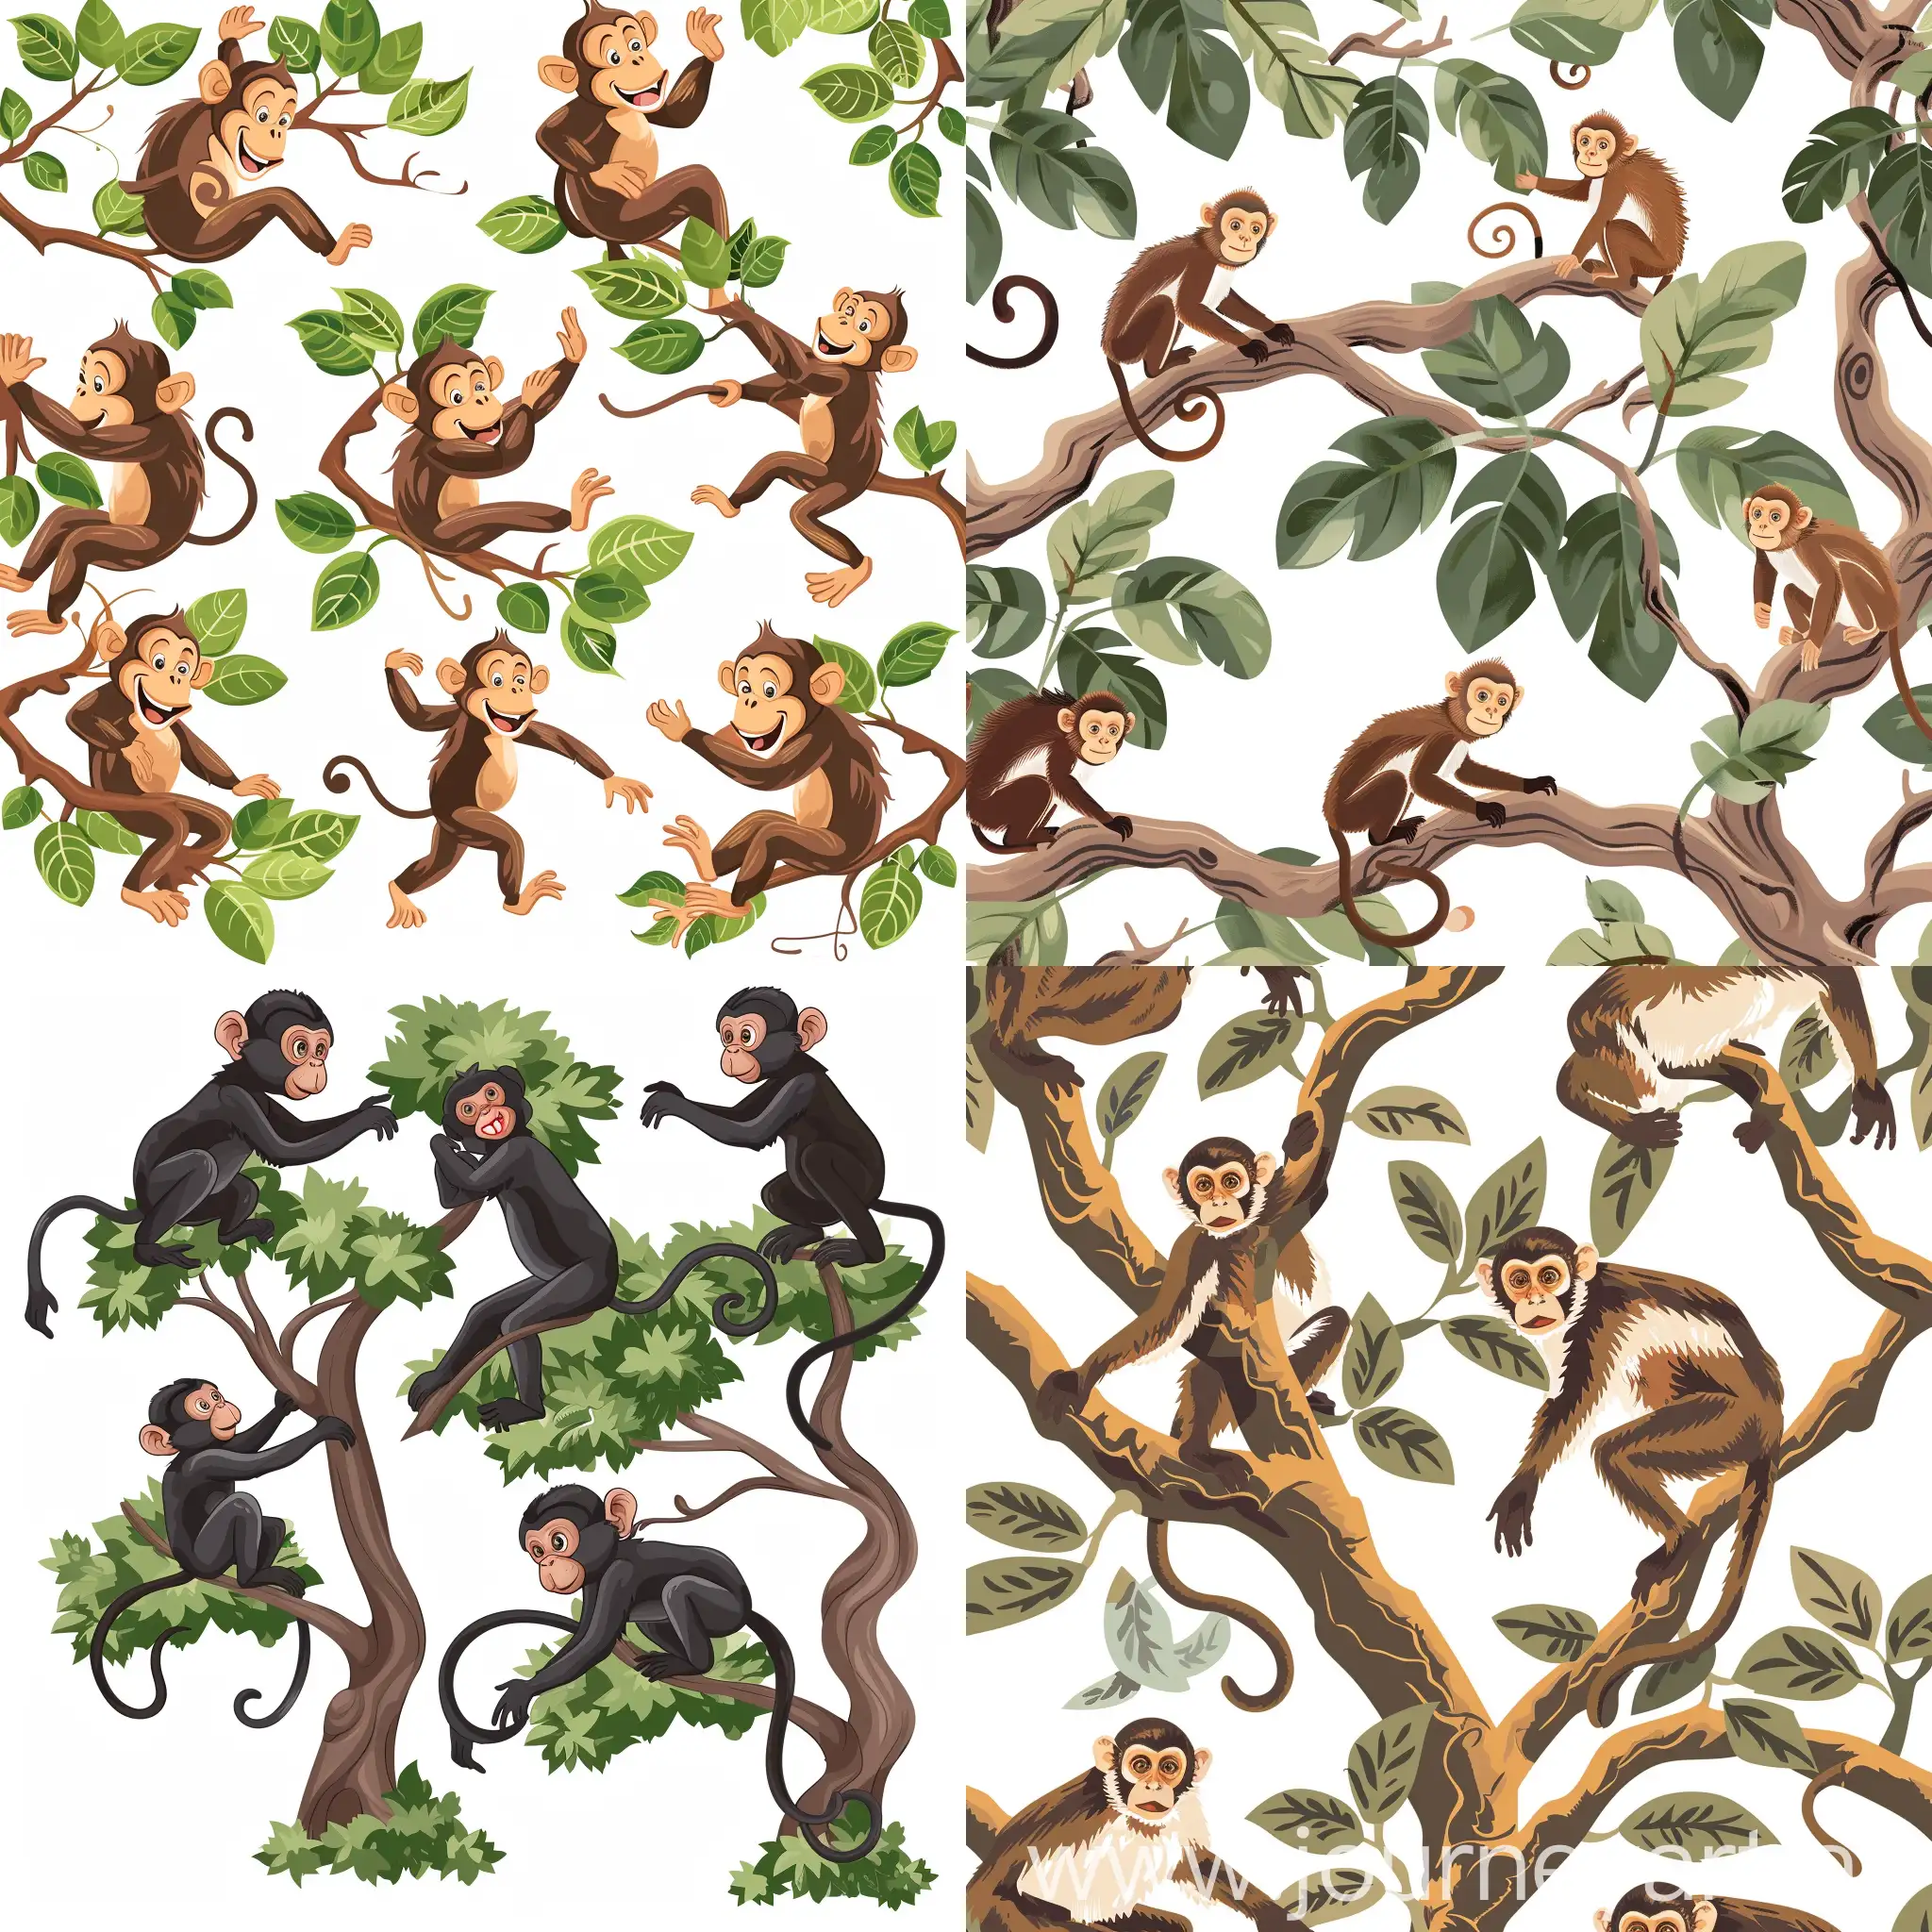  обезьяны сидят на ветках деревьев. Обезьяны спускаются с деревьев. Обезьяны радостно бегают по земле.